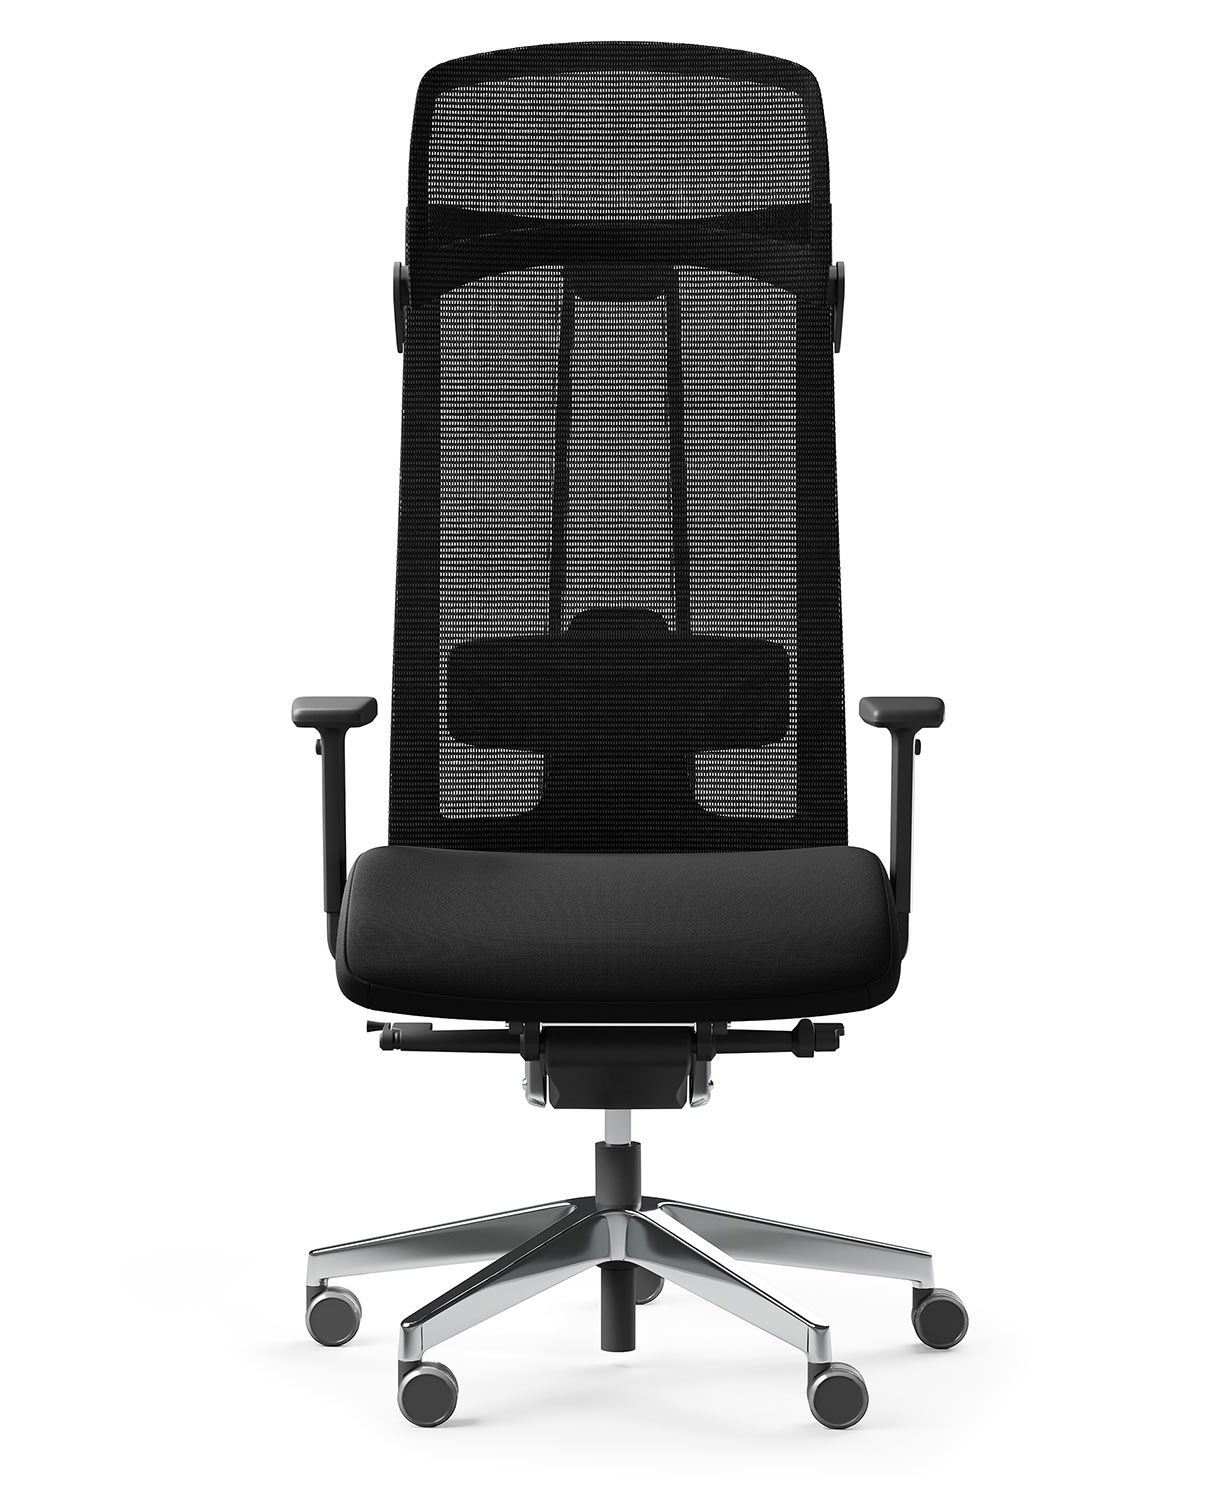 Action 115 SFL to fotel gabinetowy, który charakteryzuje się nie tylko wysoką wygodą, ale także optymalną pozycją ciała podczas długotrwałego siedzenia. Fotel ten został zaprojektowany z myślą o osobach o wadze do 150 kg, a jego wytrzymałość została potwierdzona certyfikatem GS.